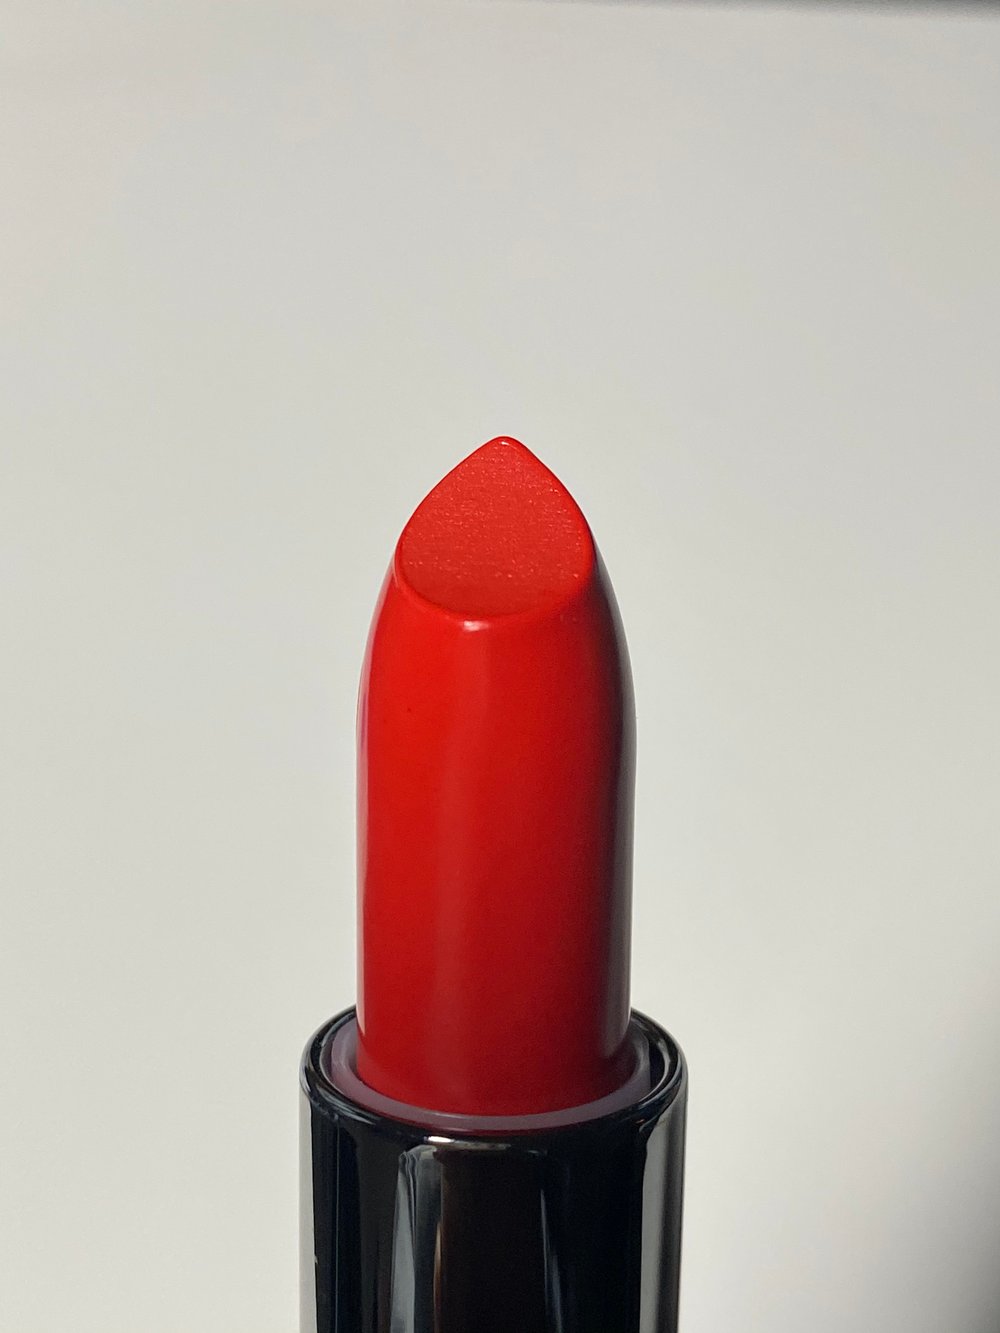 Fire Belle - Luxury Velvet Matte Lip Color